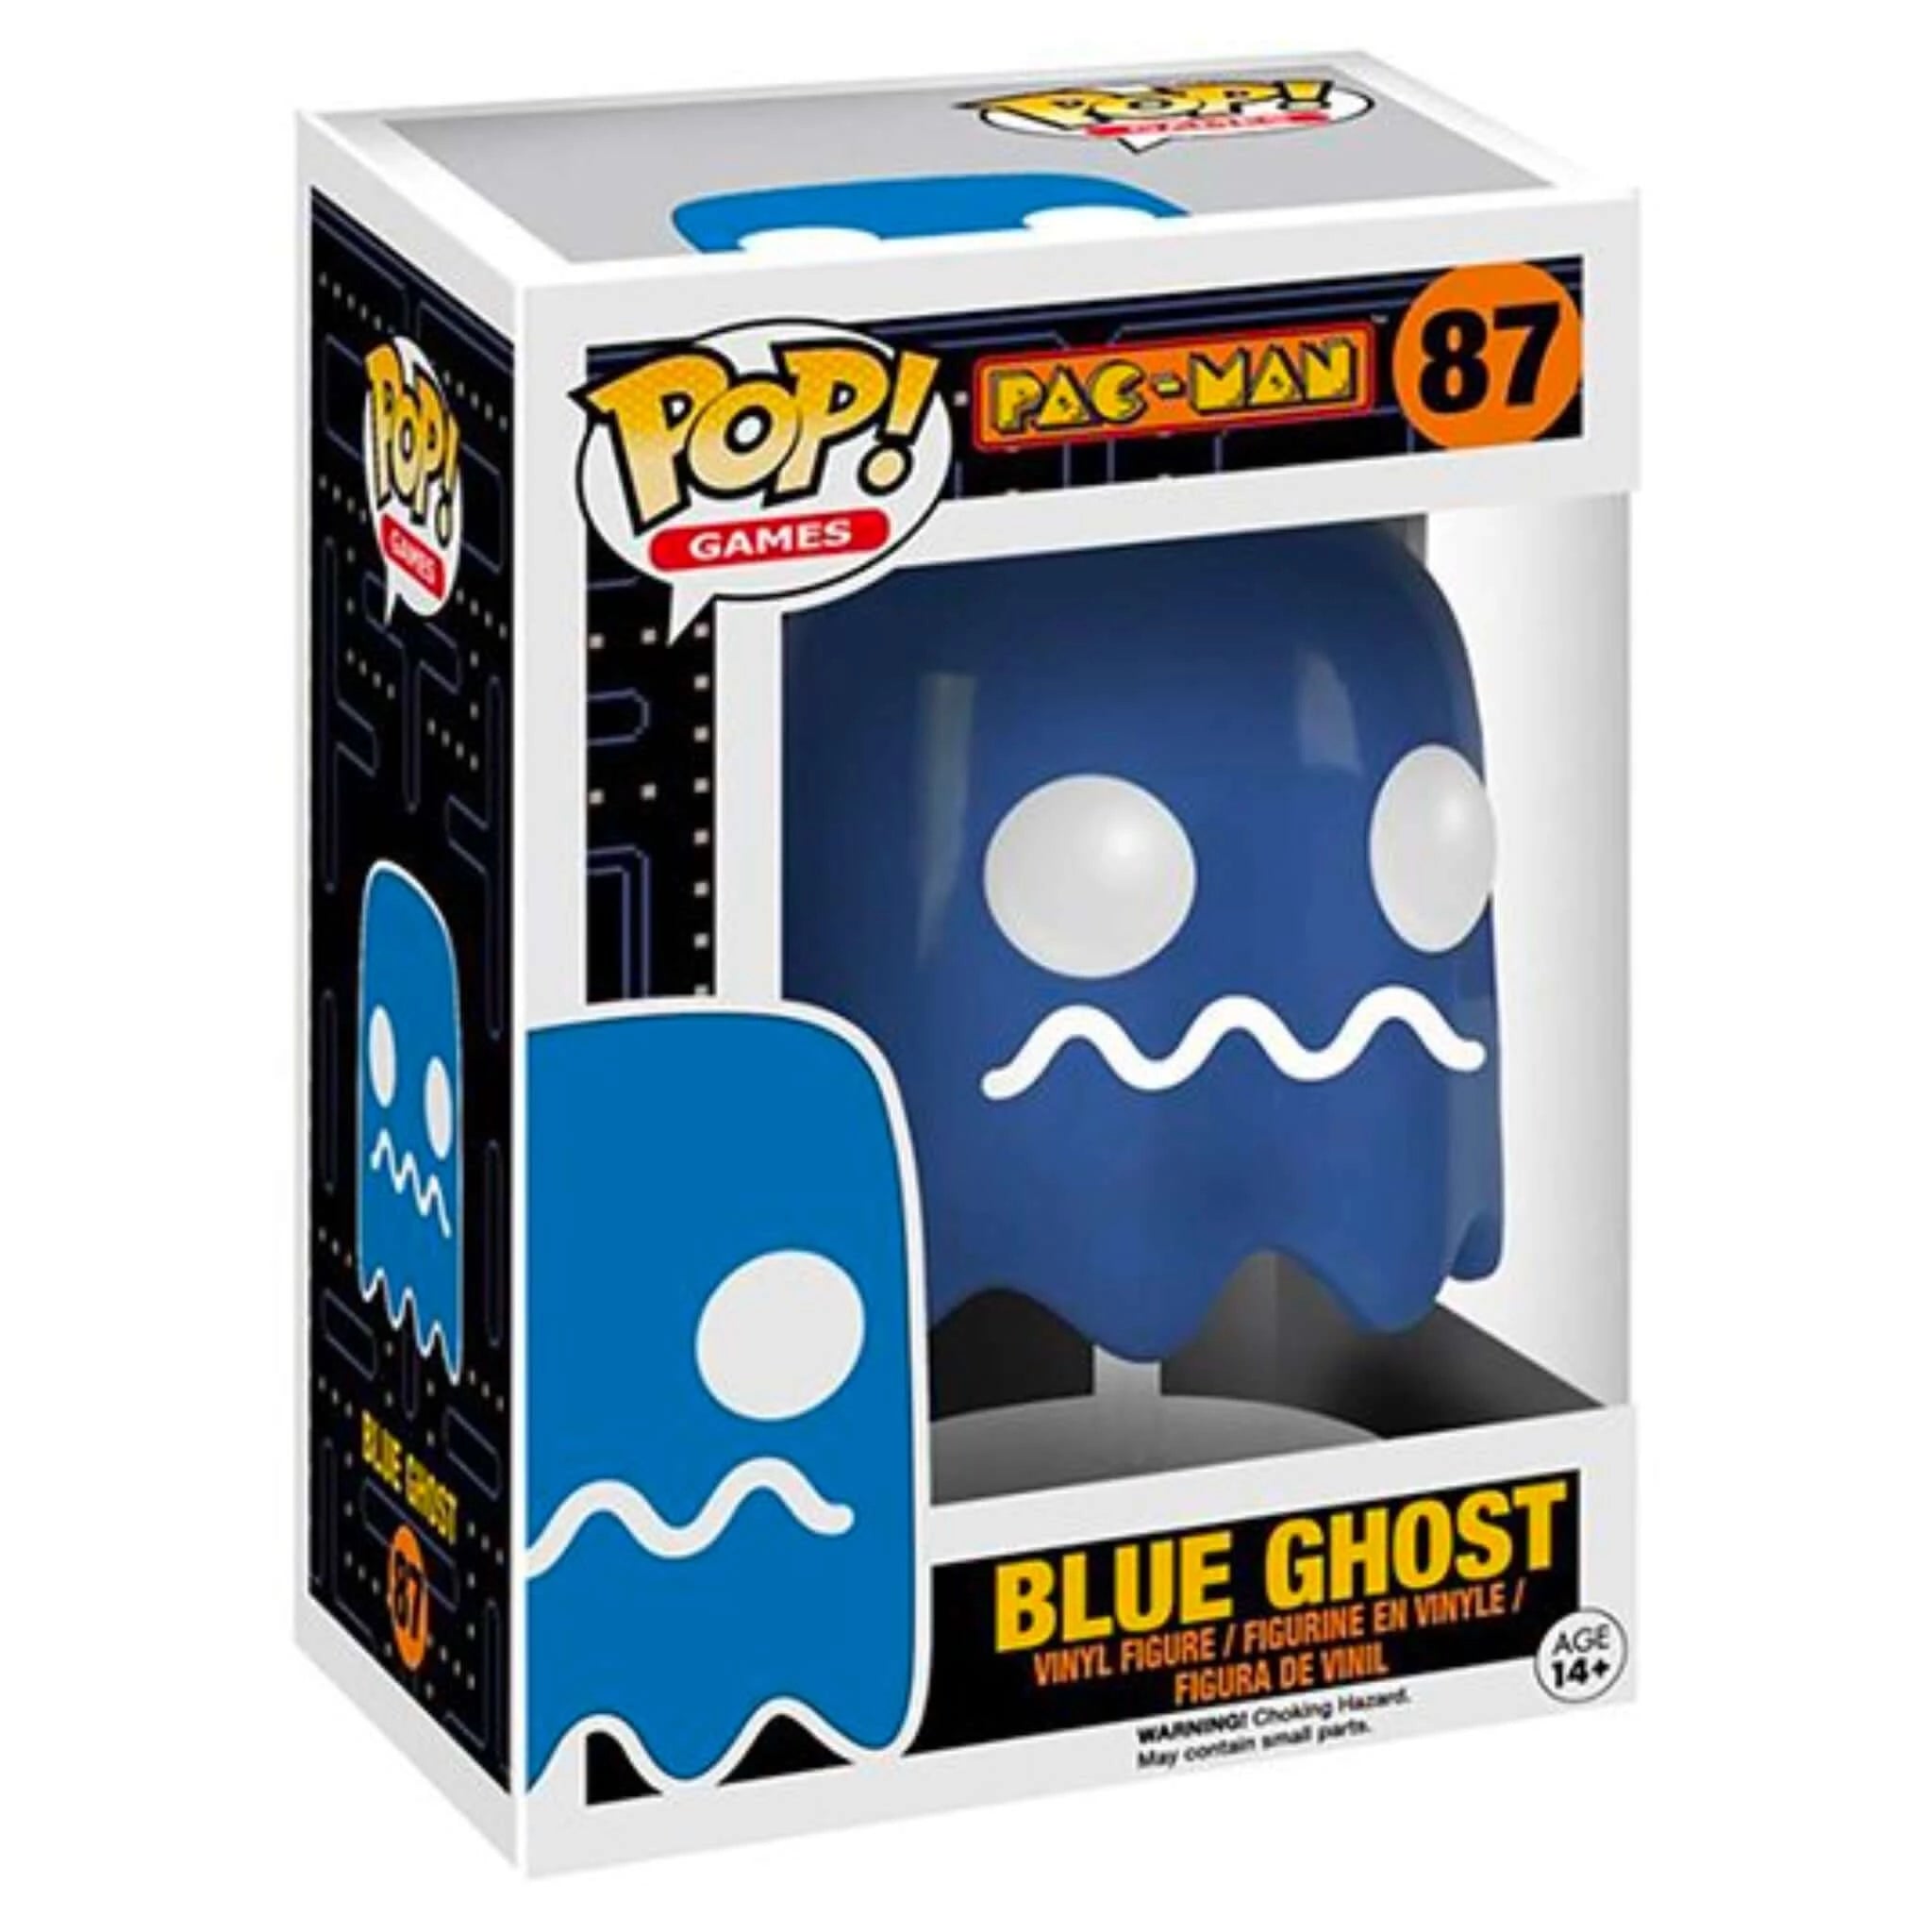 Blue Ghost Funko Pop!-Jingle Truck Toys